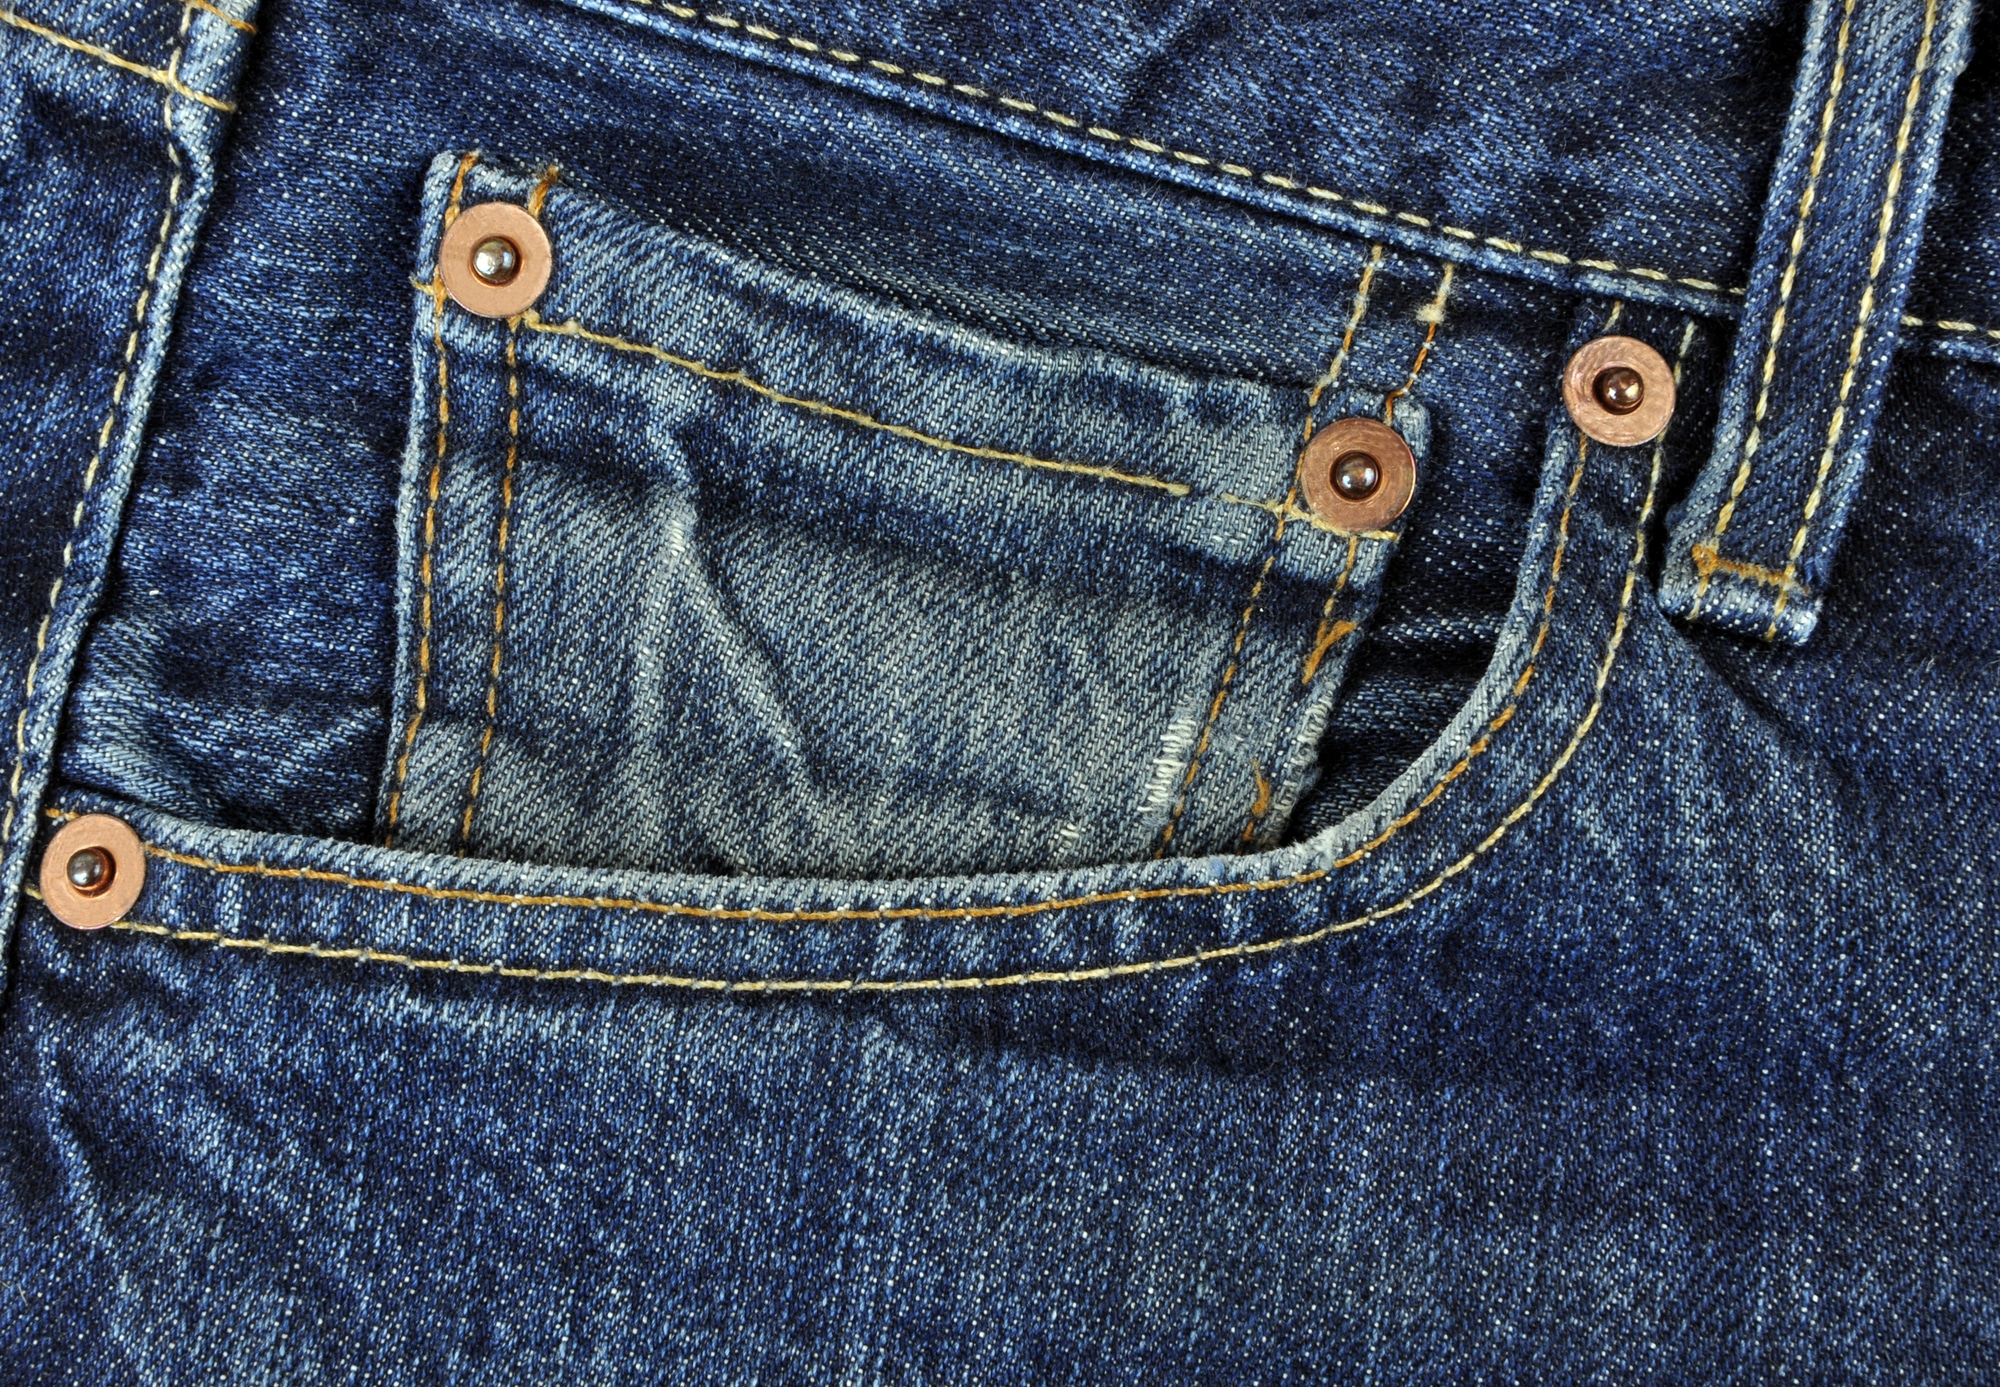 La petite poche avant des jeans à quoi sert-elle réellement